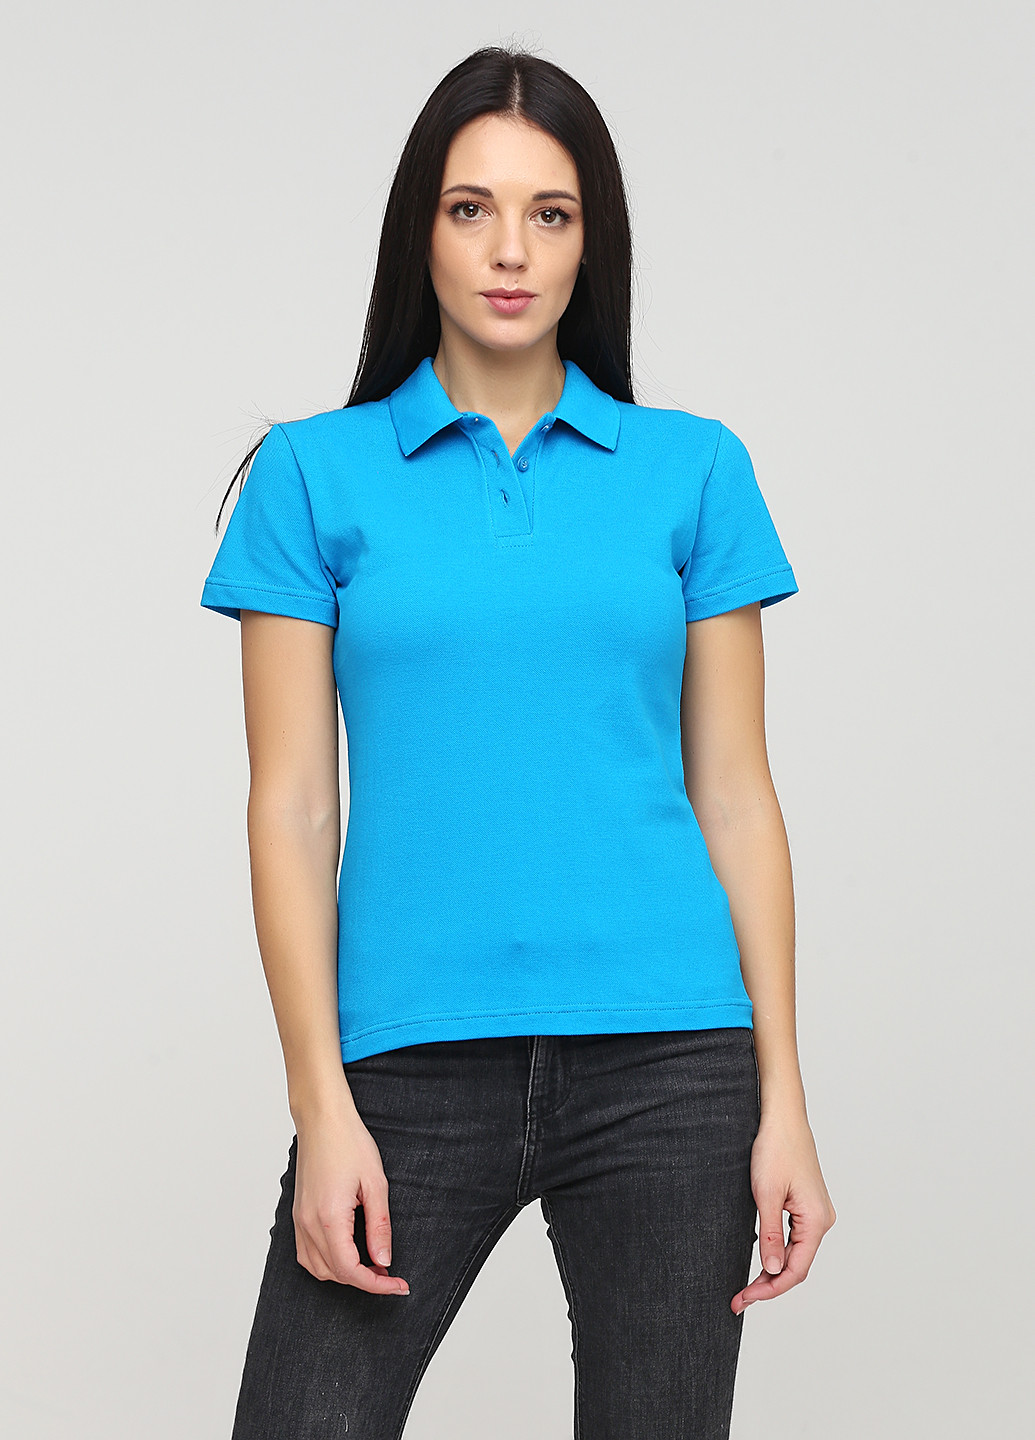 Бирюзовая женская футболка-футболка поло женская классическая цвет сине-бирюзовый Melgo однотонная